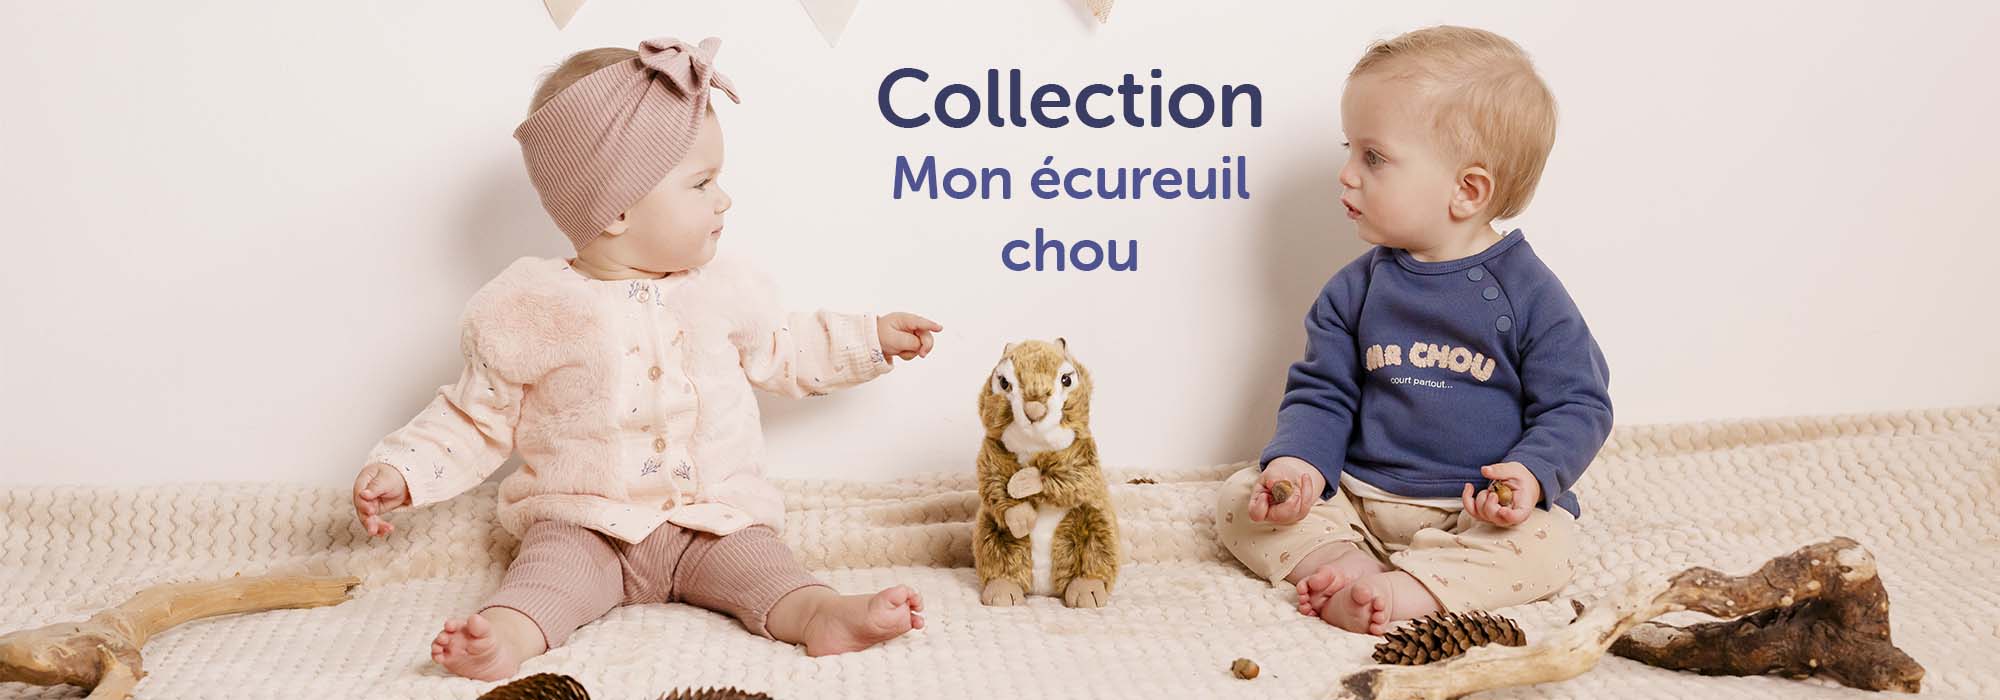 Collection Mon écureuil chou